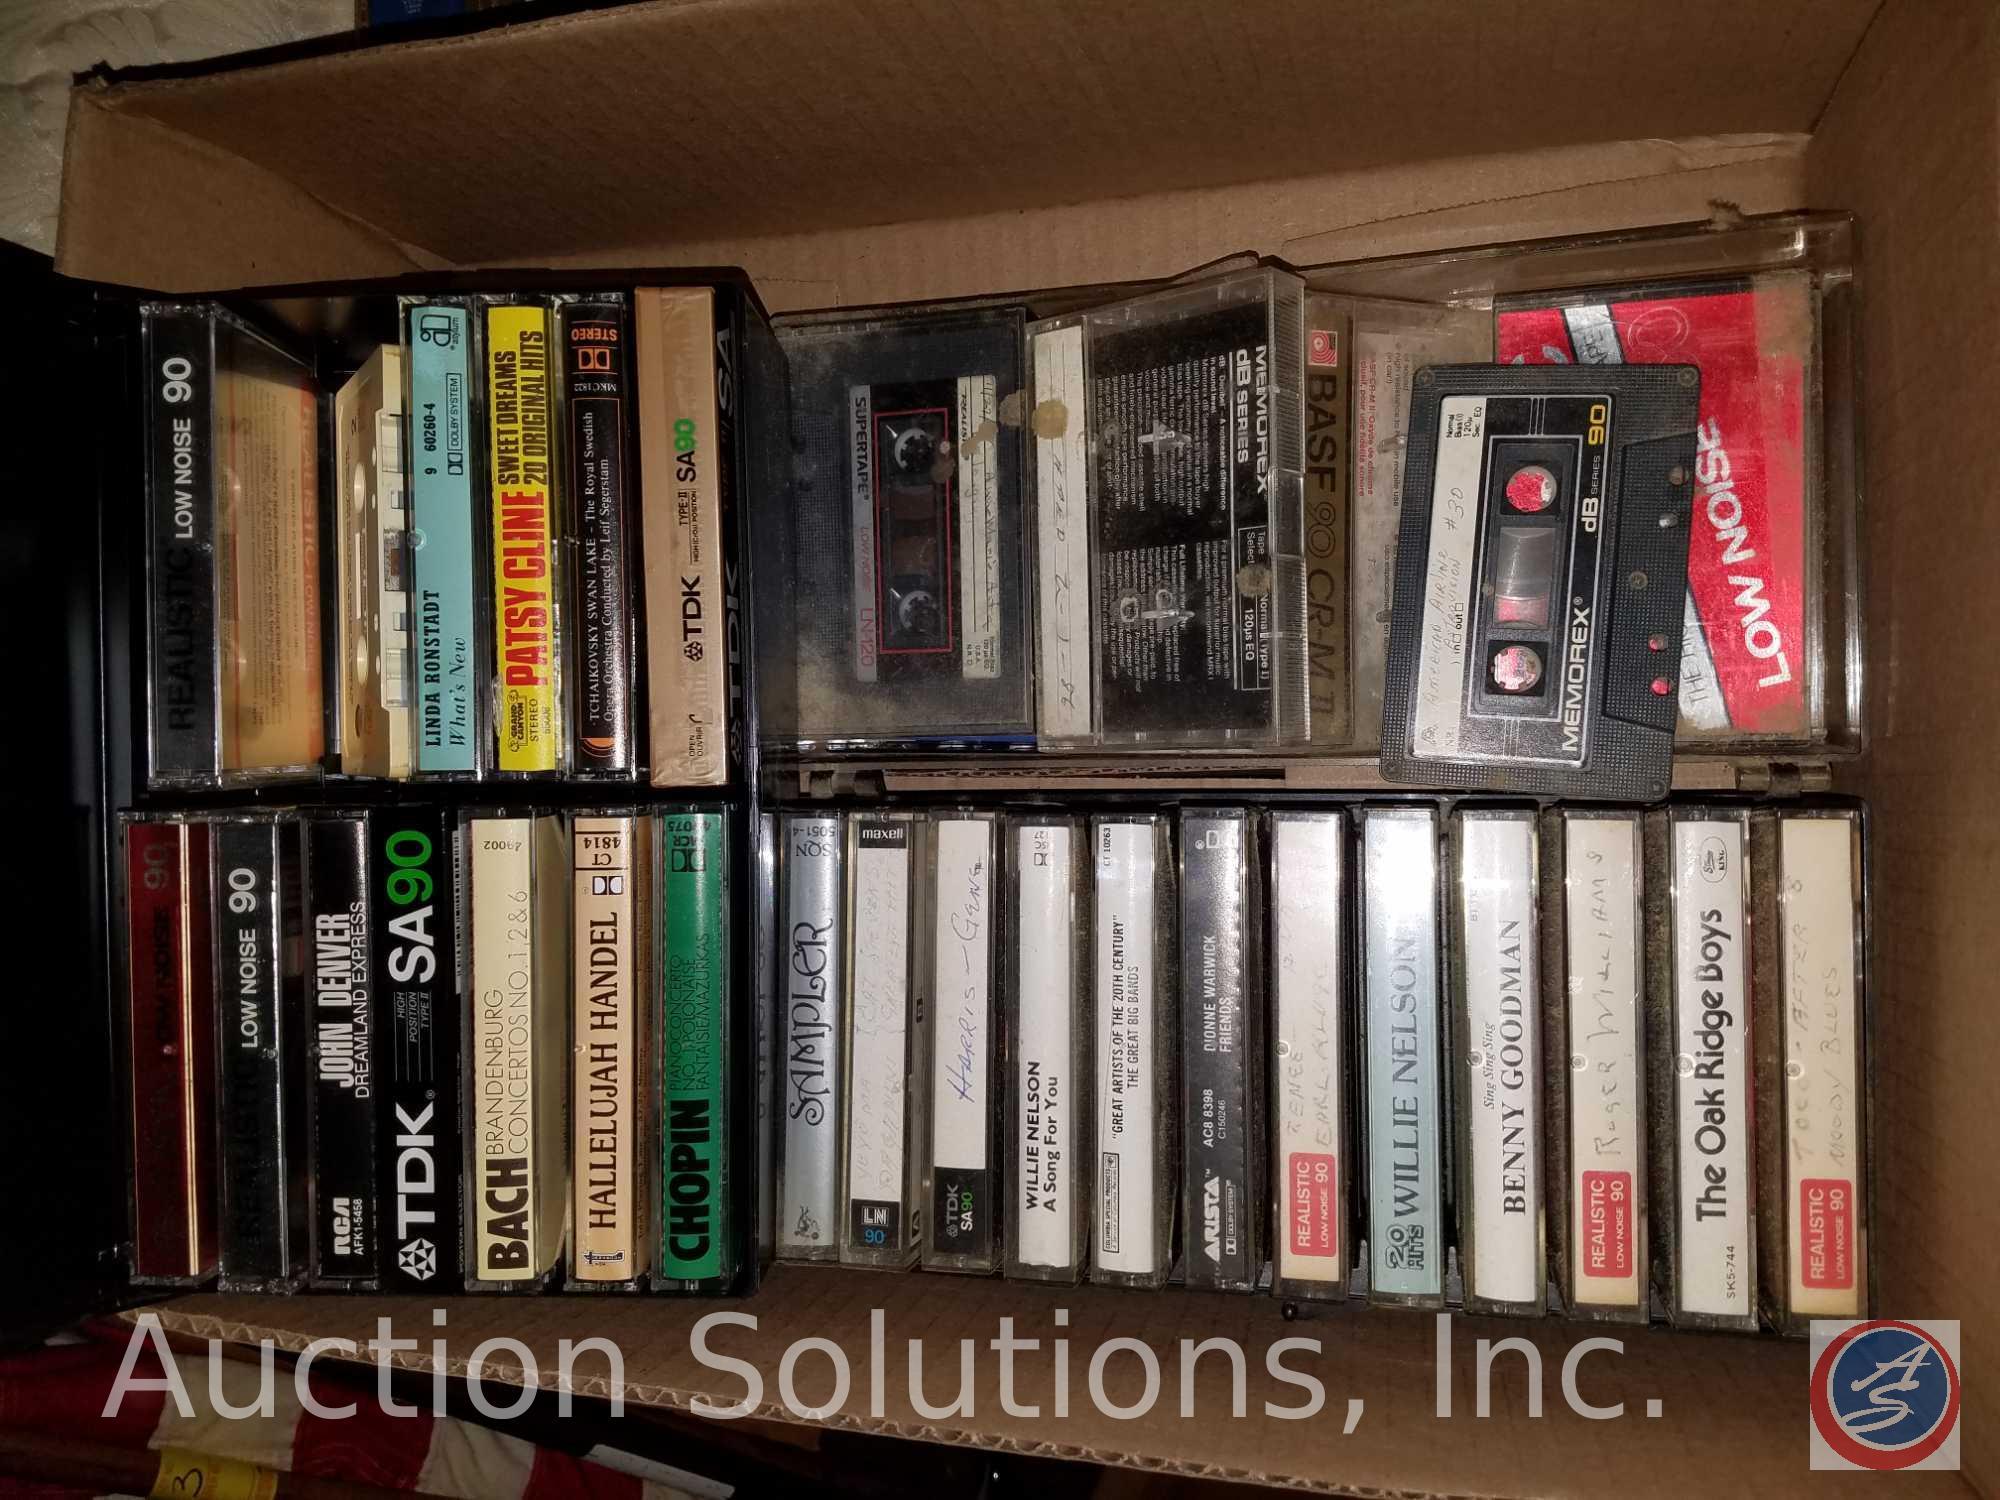 24"X 9 1/2"X53" Shelf with Loyds Cassette Recorder(Model V555) Cassestt tapes, Panasonic Cassette